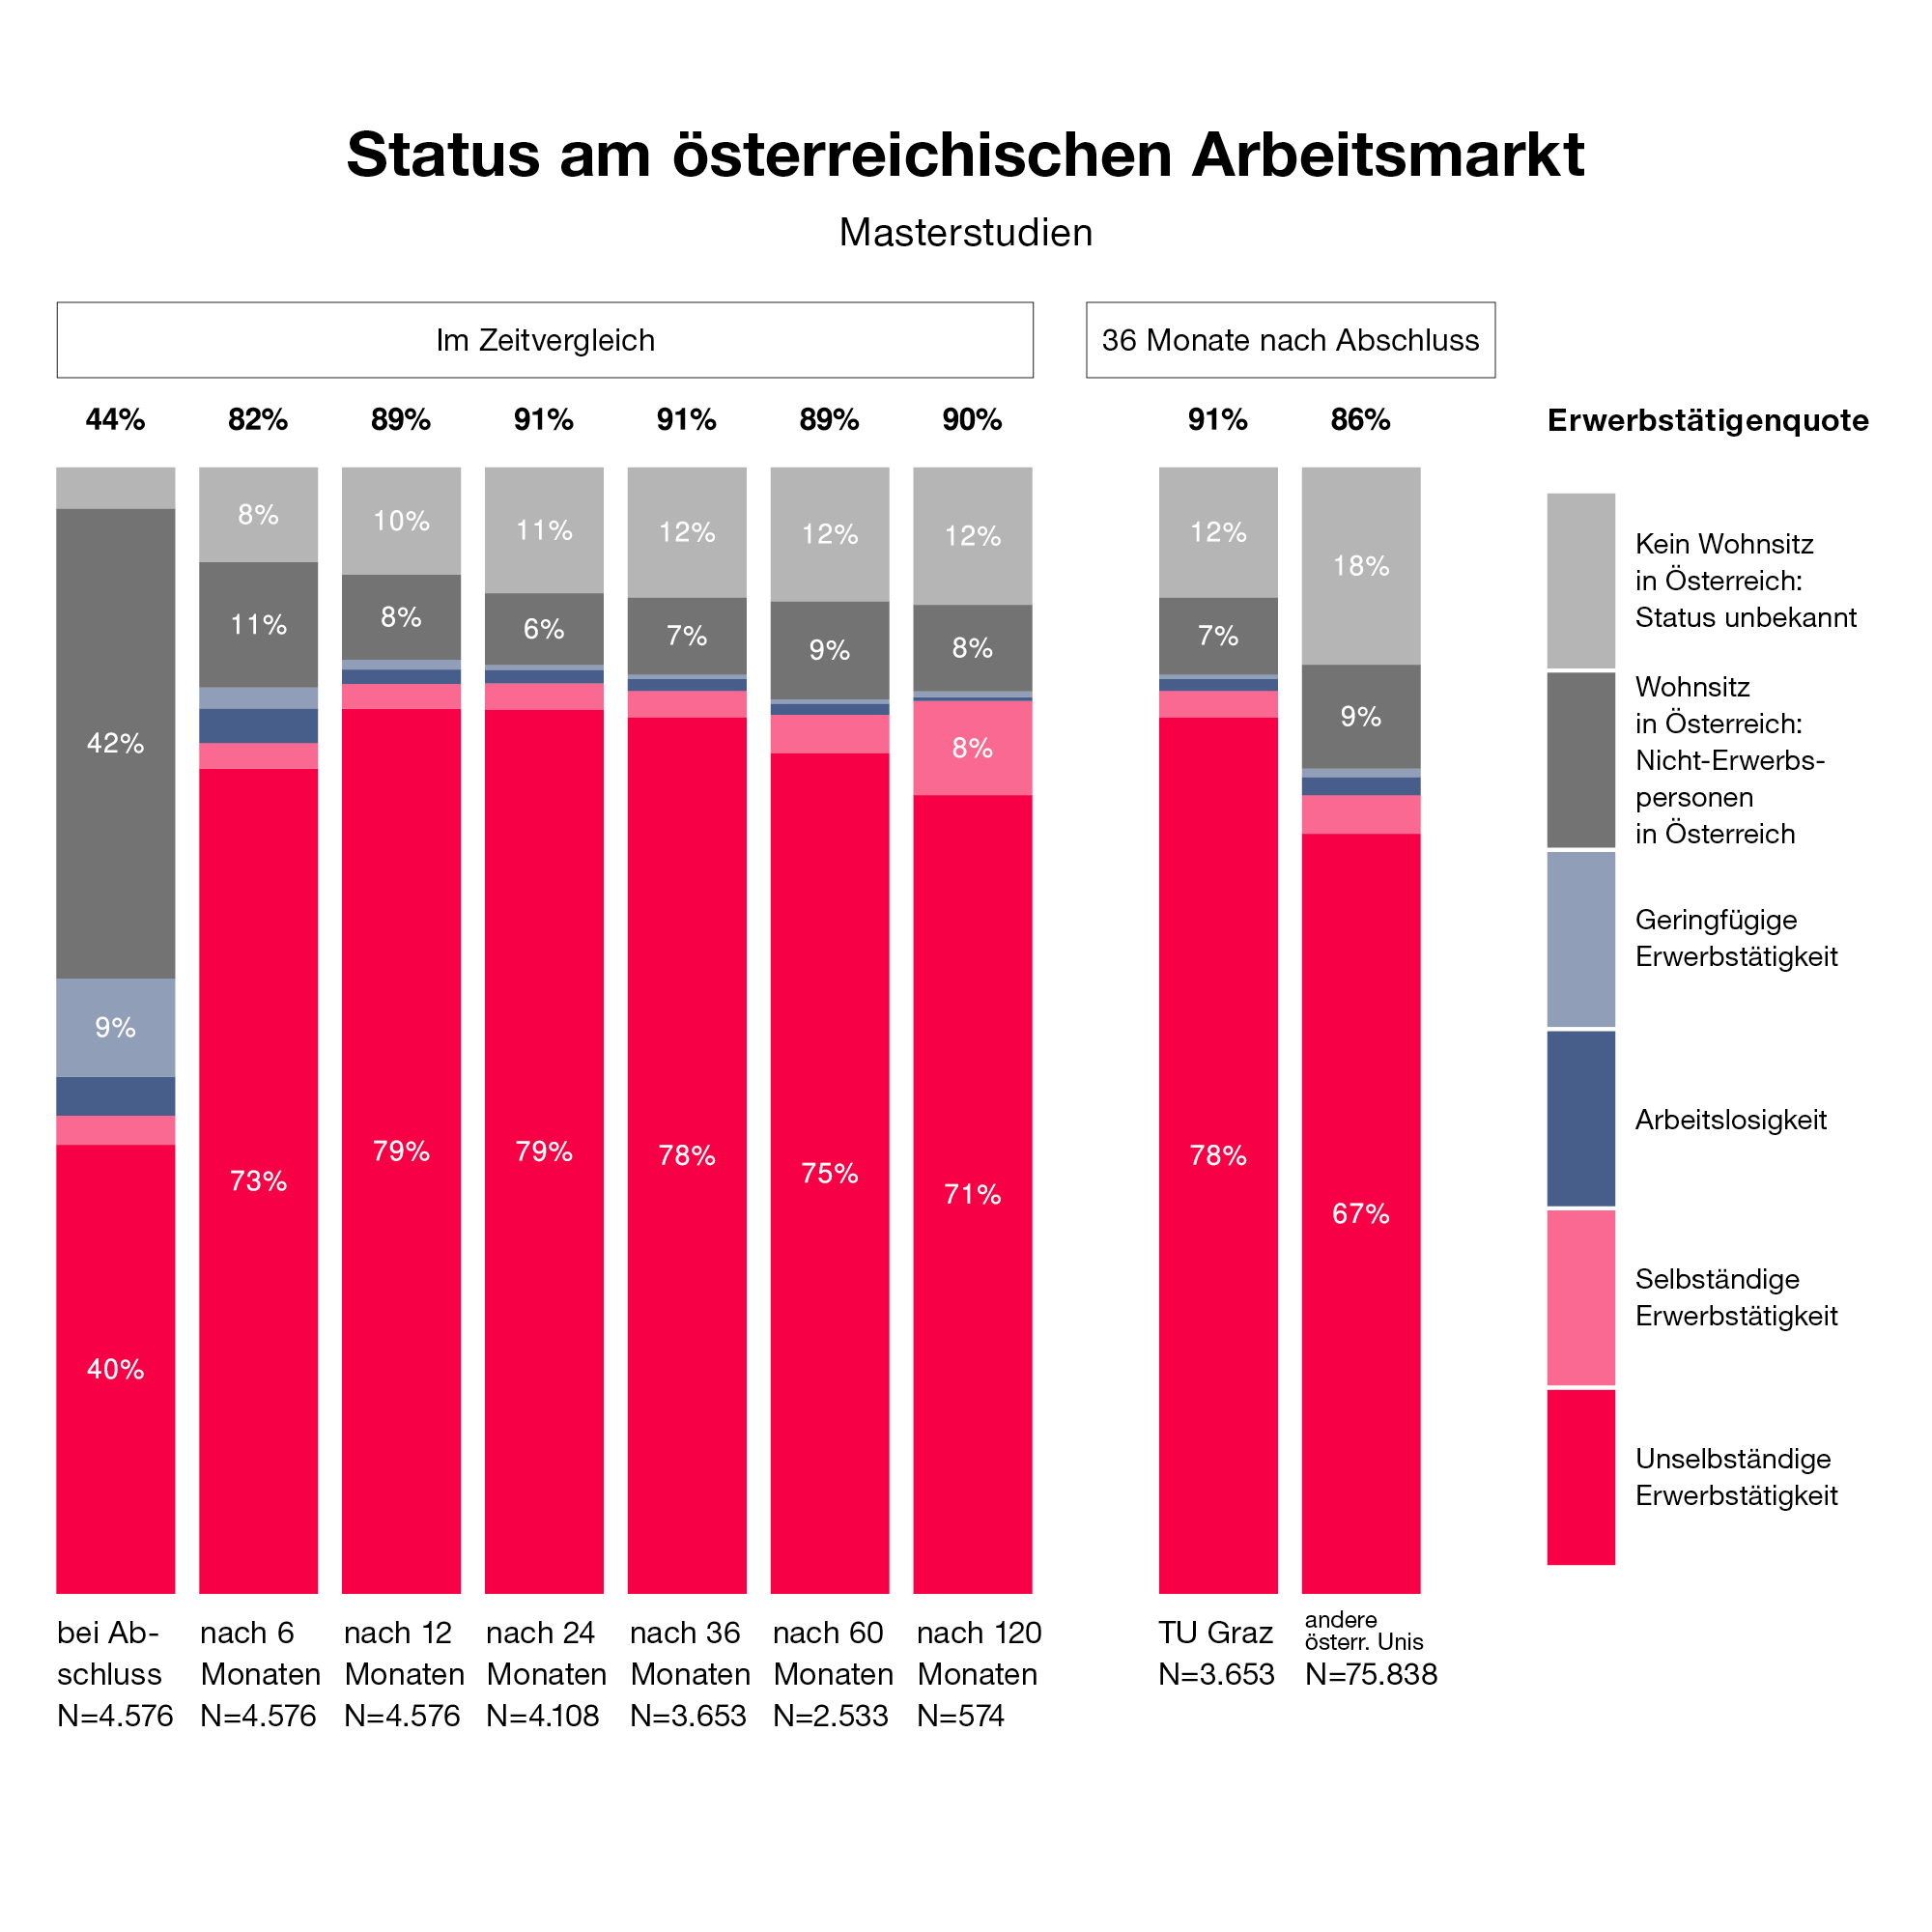 Grafik über die Erwerbstätigenquote von Absolvent*innen von Masterstudien der TU Graz